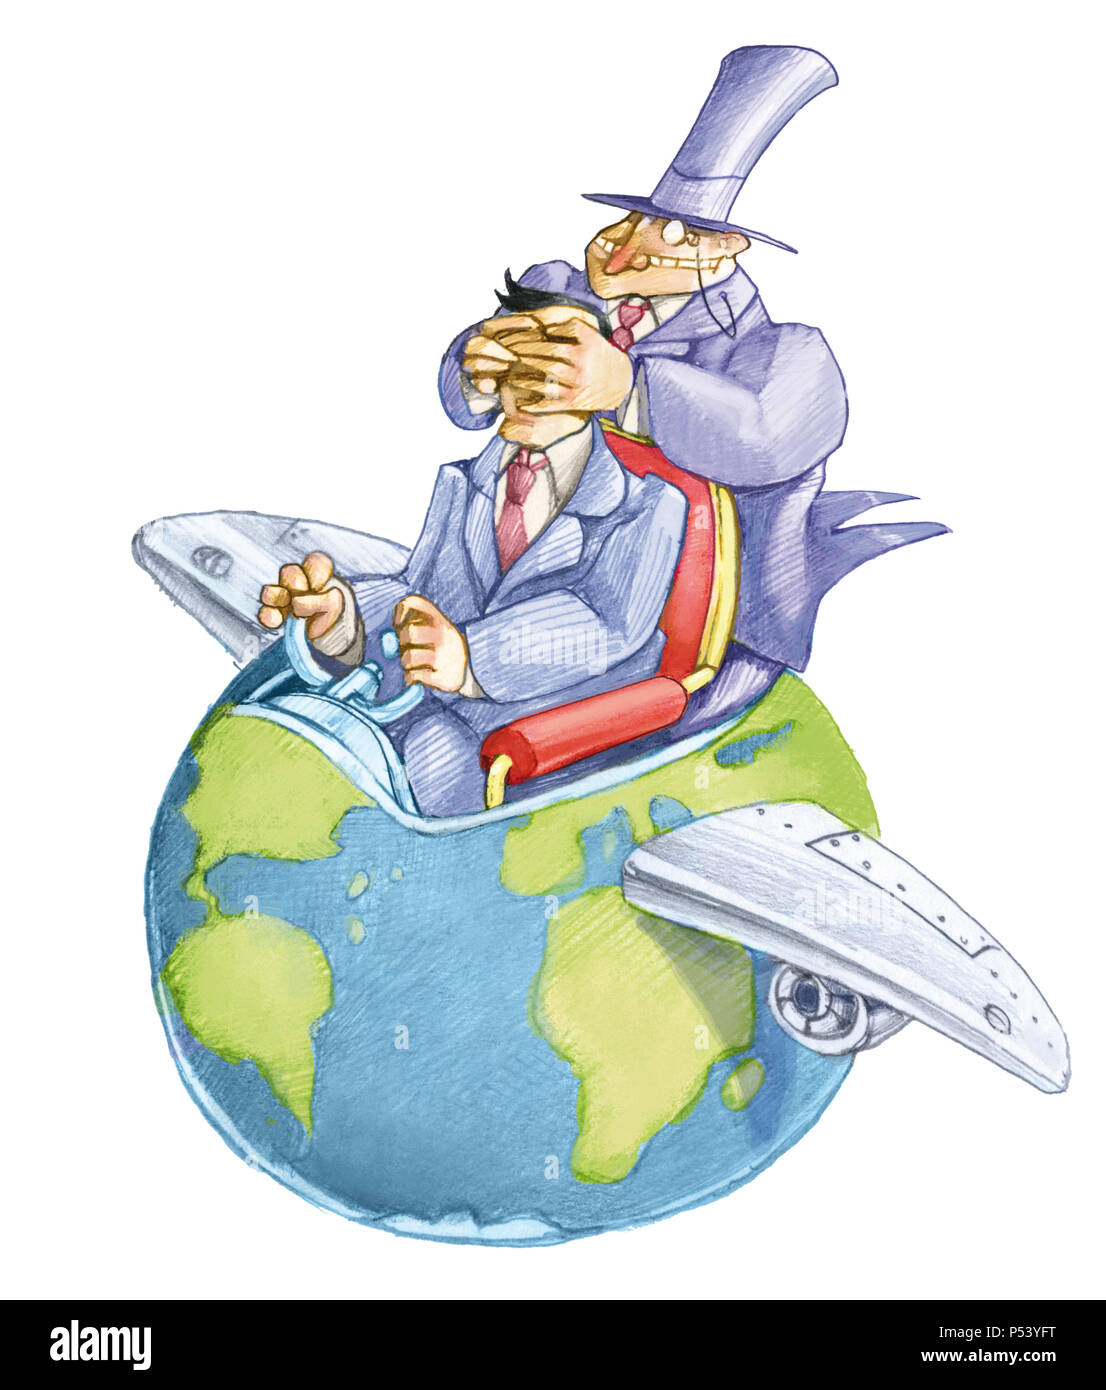 Banquier ferme les yeux d'une volonté politique qui anime le monde qui semble un avion funny cartoon politique Banque D'Images